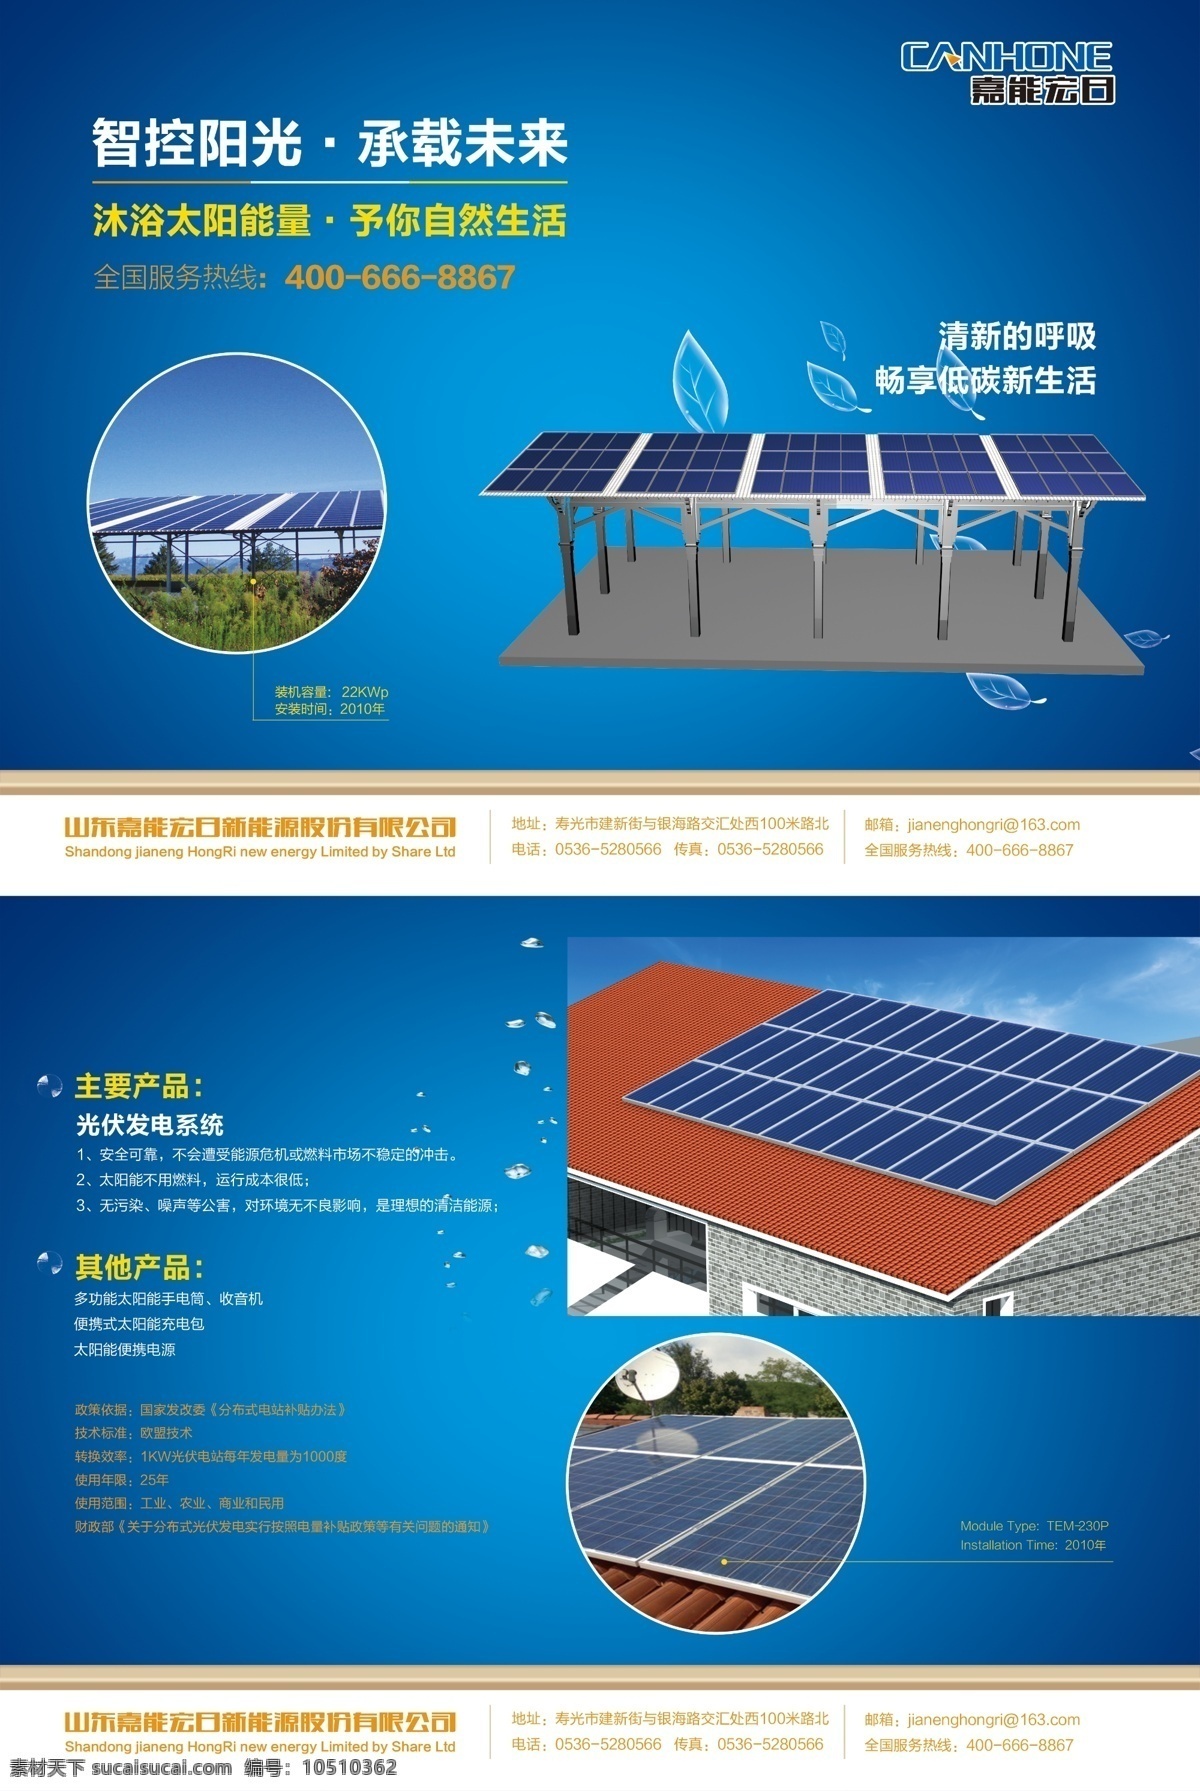 创意 单页 广告设计模板 蓝色 太阳能 太阳能海报 原创设计 海报 模板下载 源文件 psd源文件